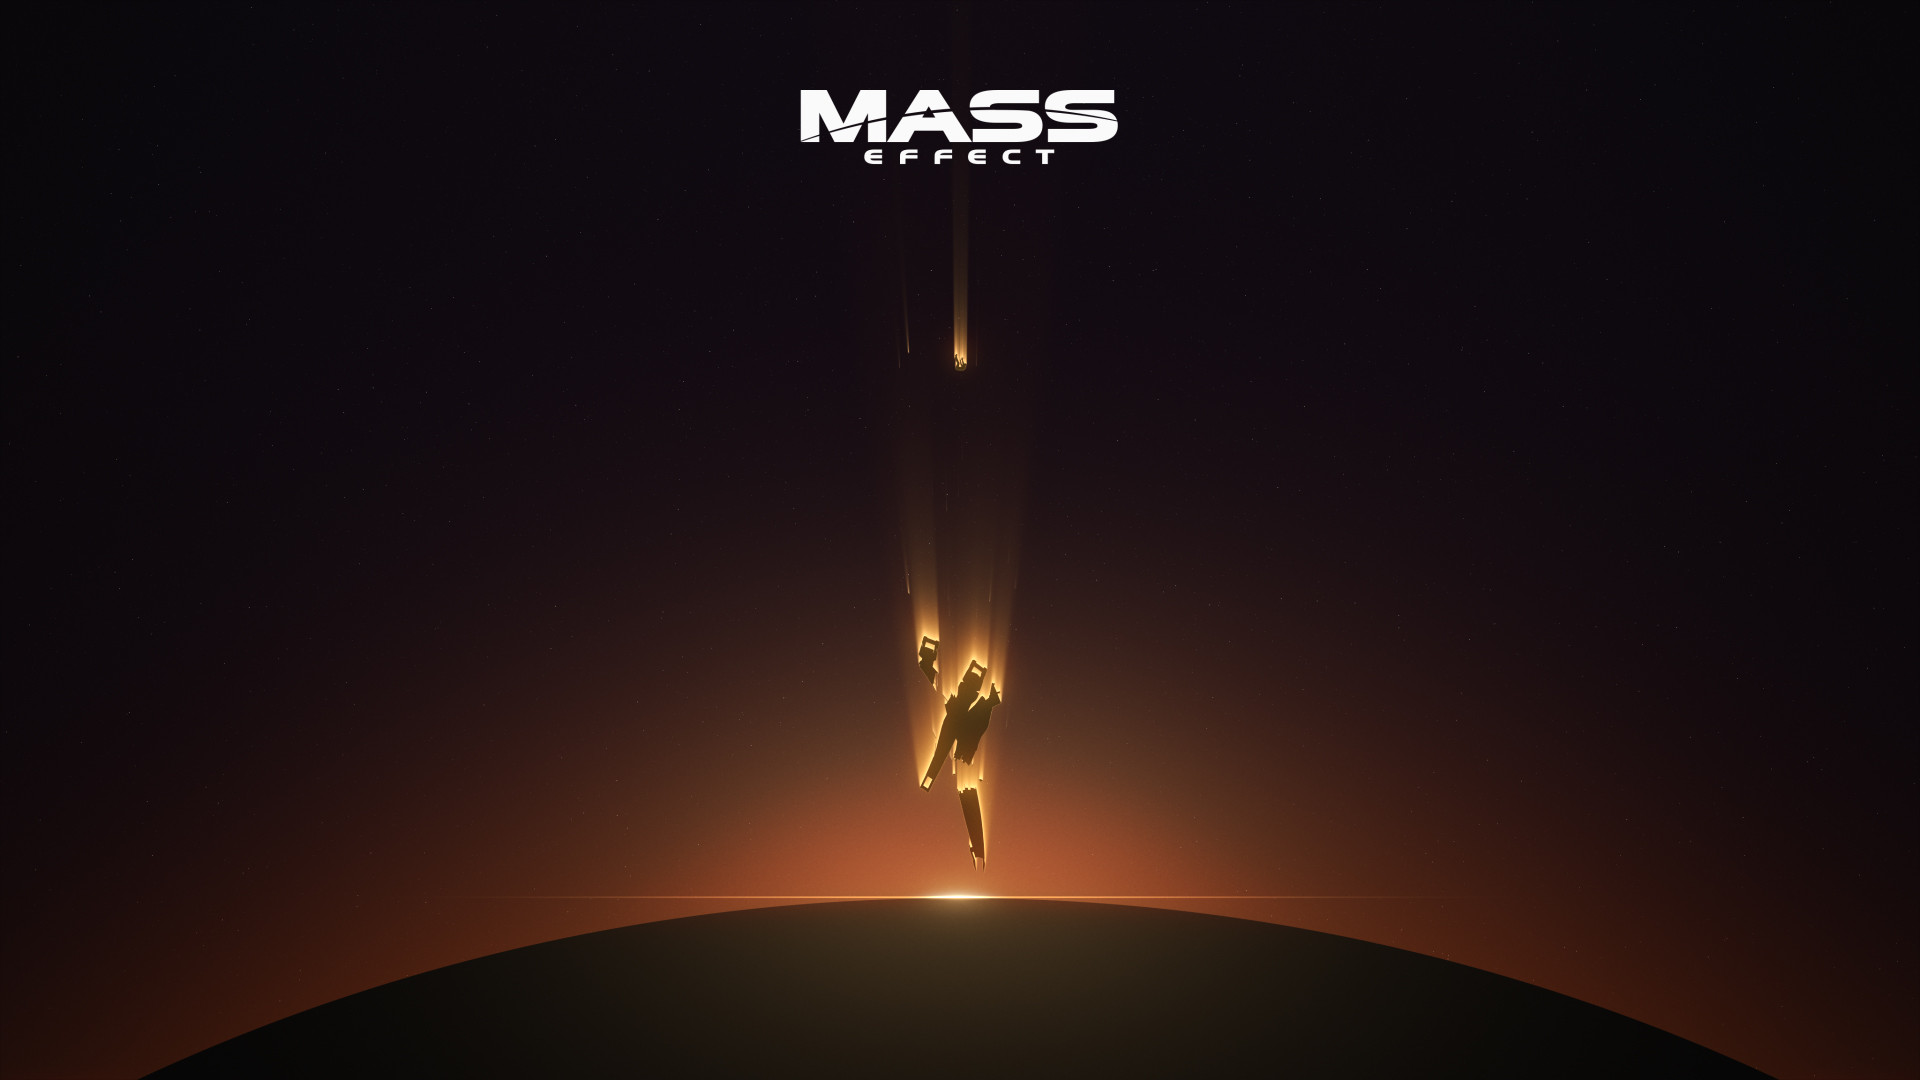 Mass Effect, Computer Game Wallpaper